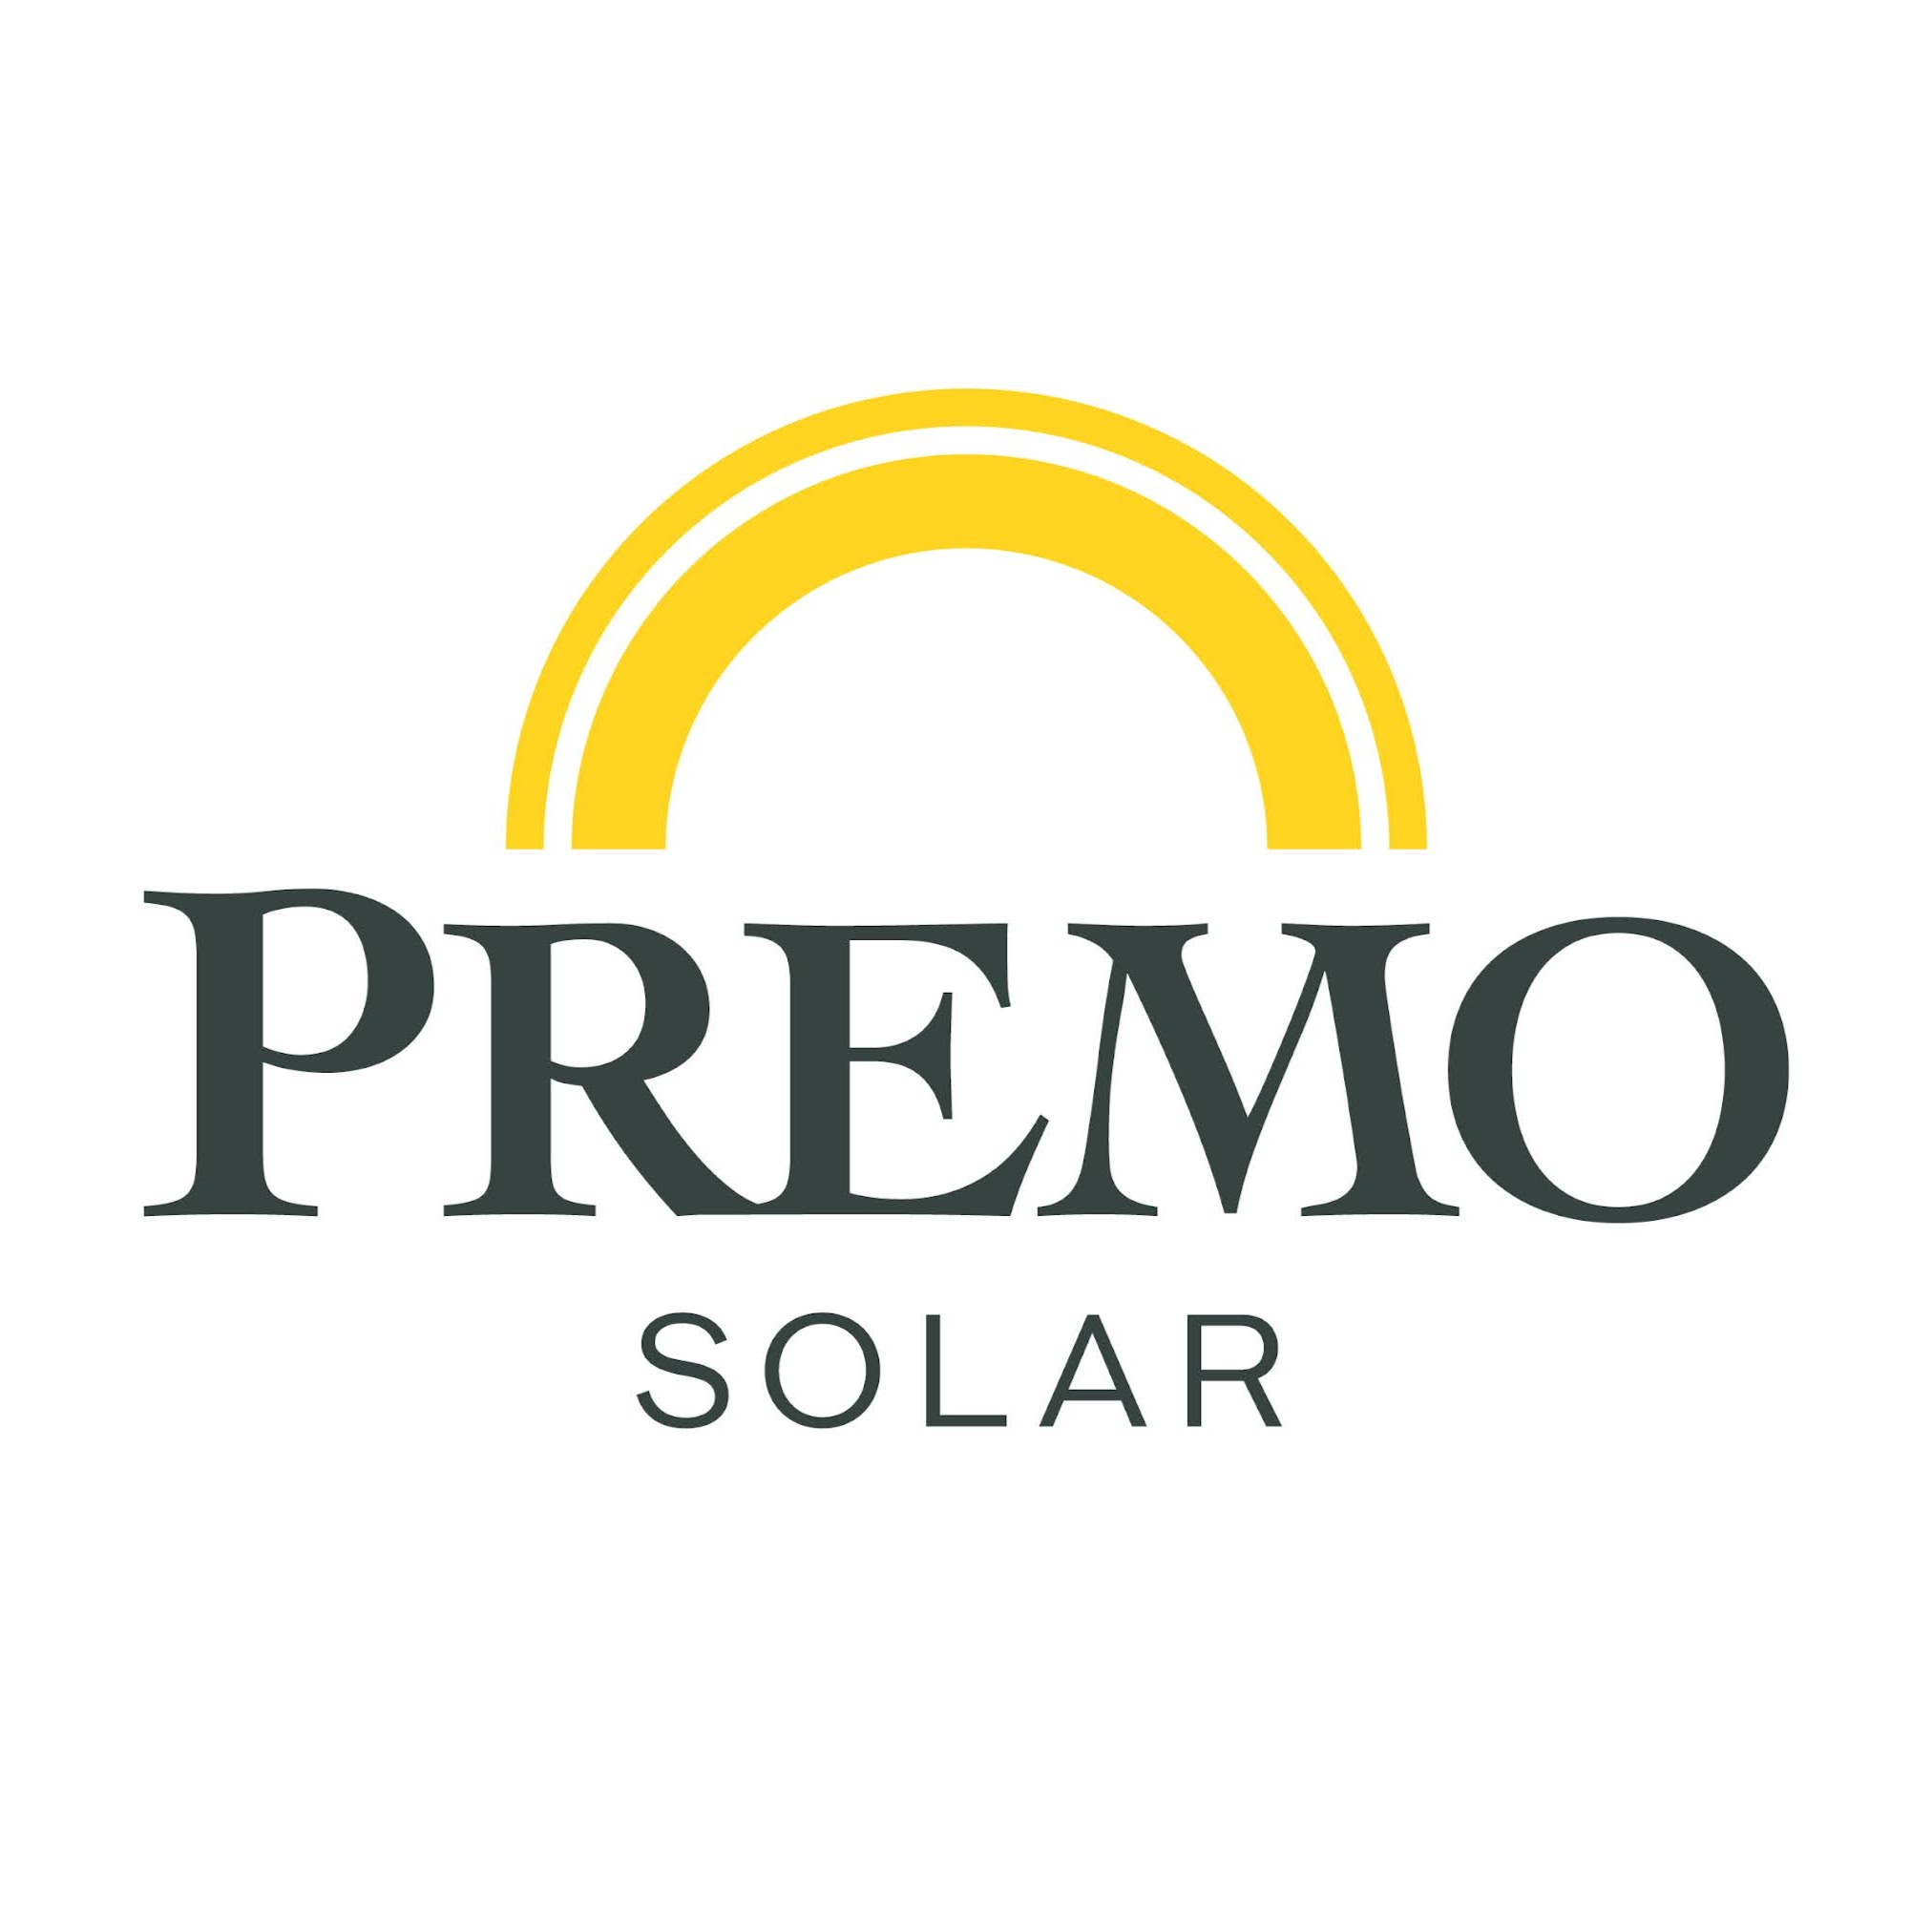 Premo Solar